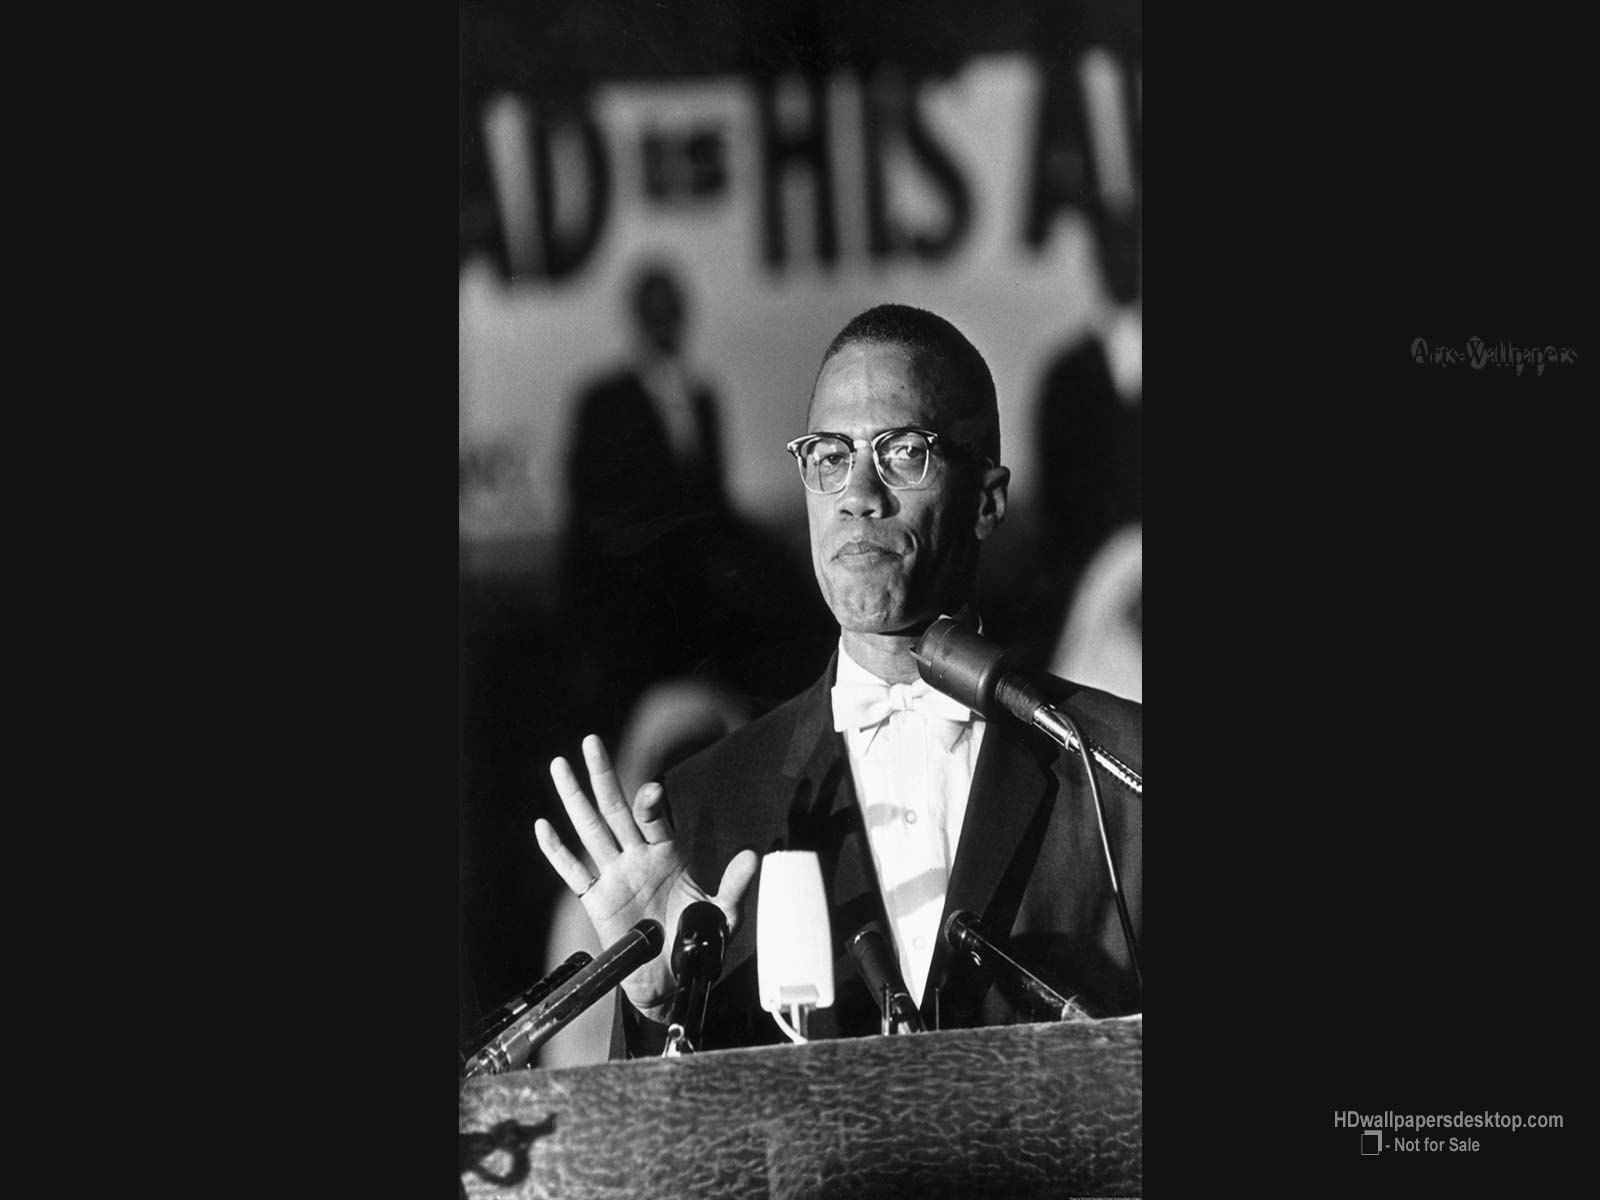 Malcolm X Wallpaper - WallpaperSafari